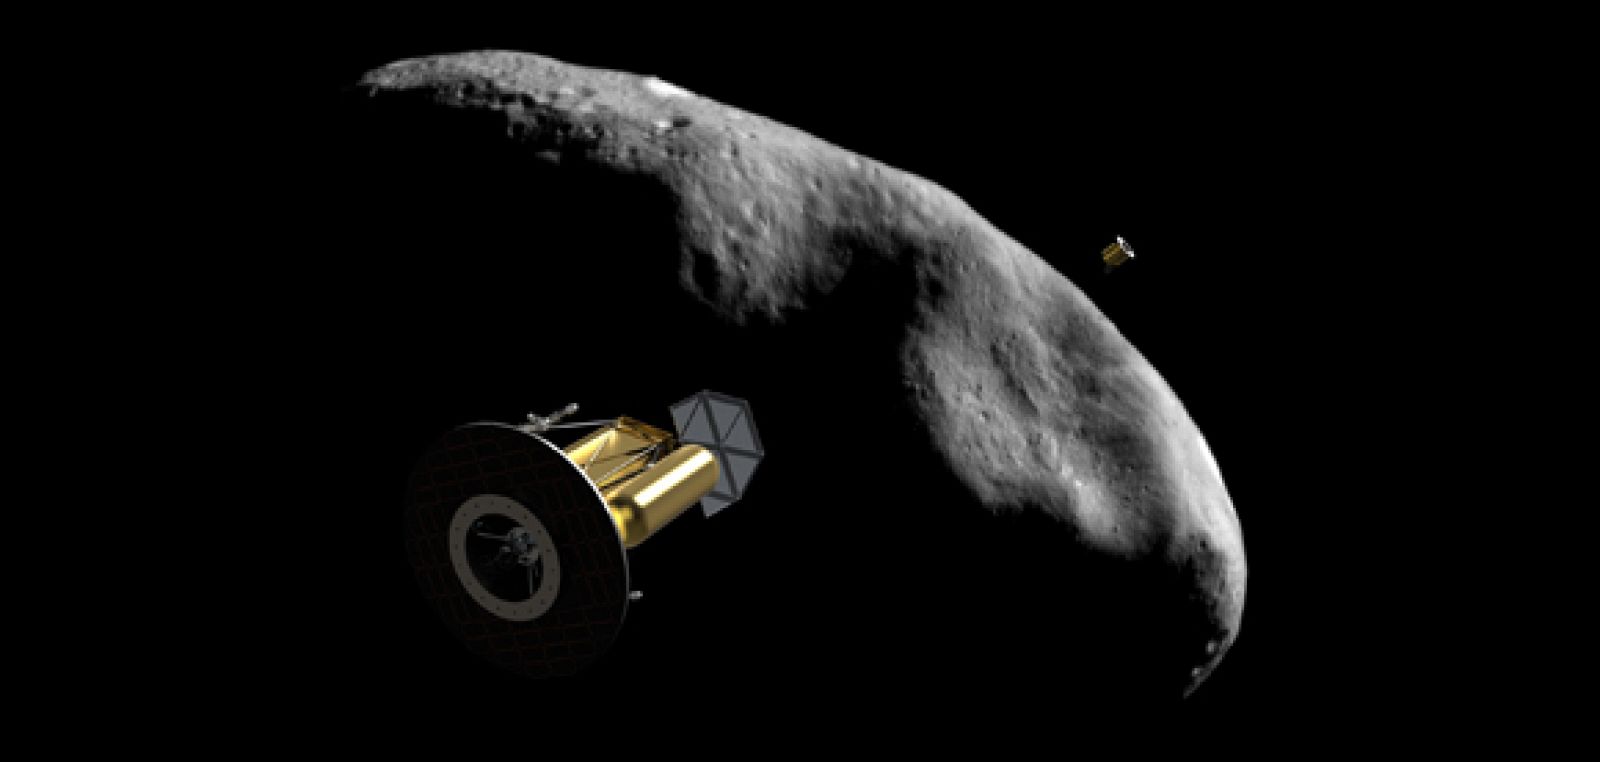 El desarrollo de la tecnología permitirá que los asteroides elegidos ¿principalmente con abundancia de agua¿sean mapeados y analizados en busca de materias primas interesantes.